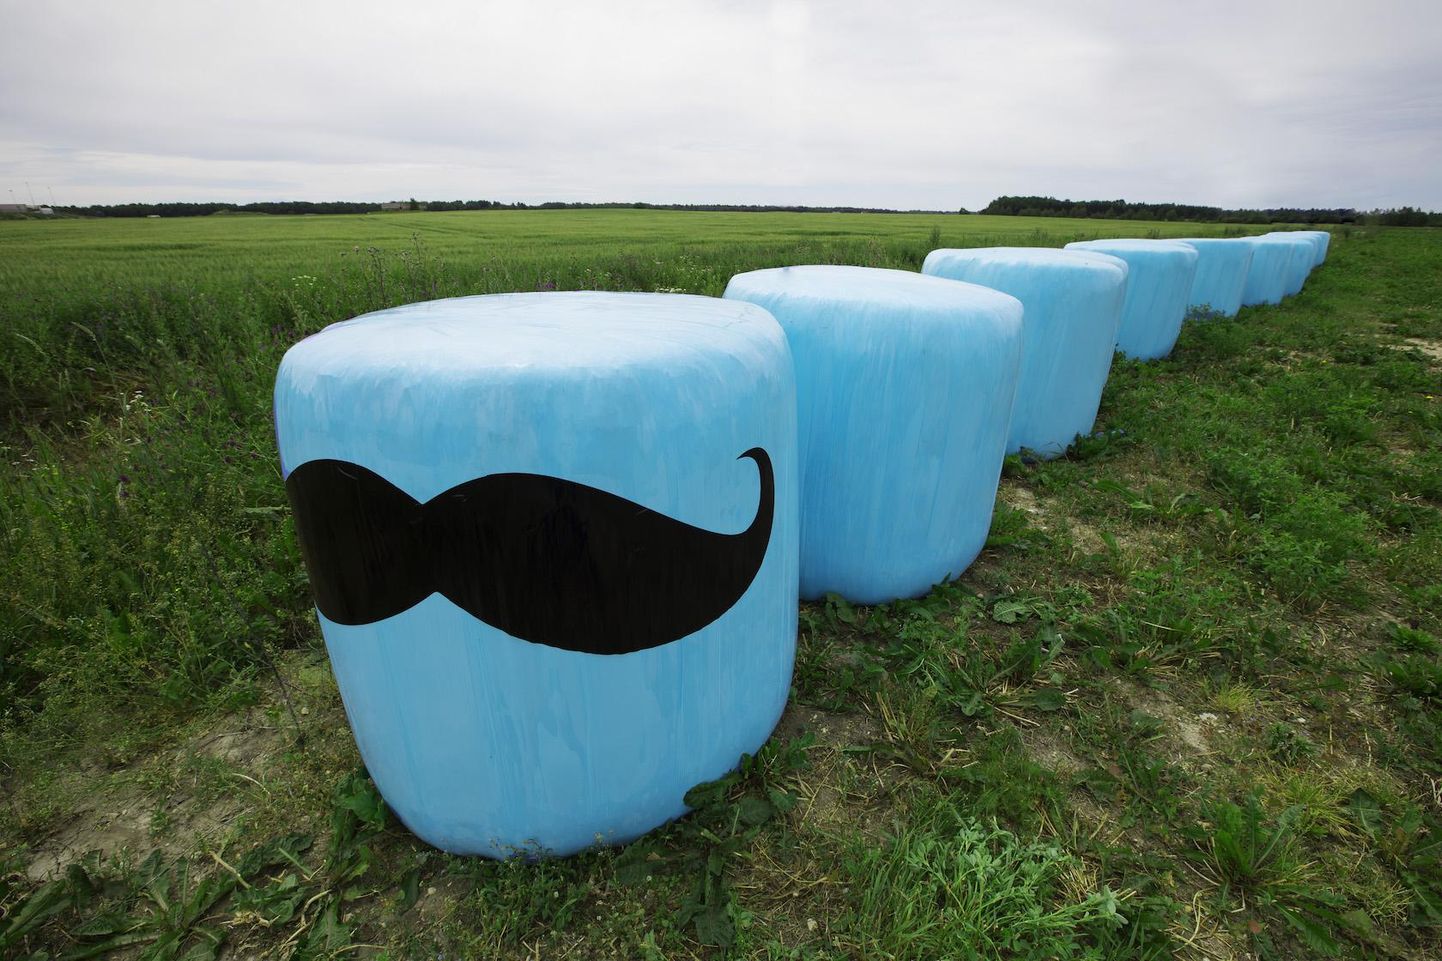 Sinised silopallid Eestimaa põldudel püüavad taas pilku, juhtides tähelepanu meeste tervisele.